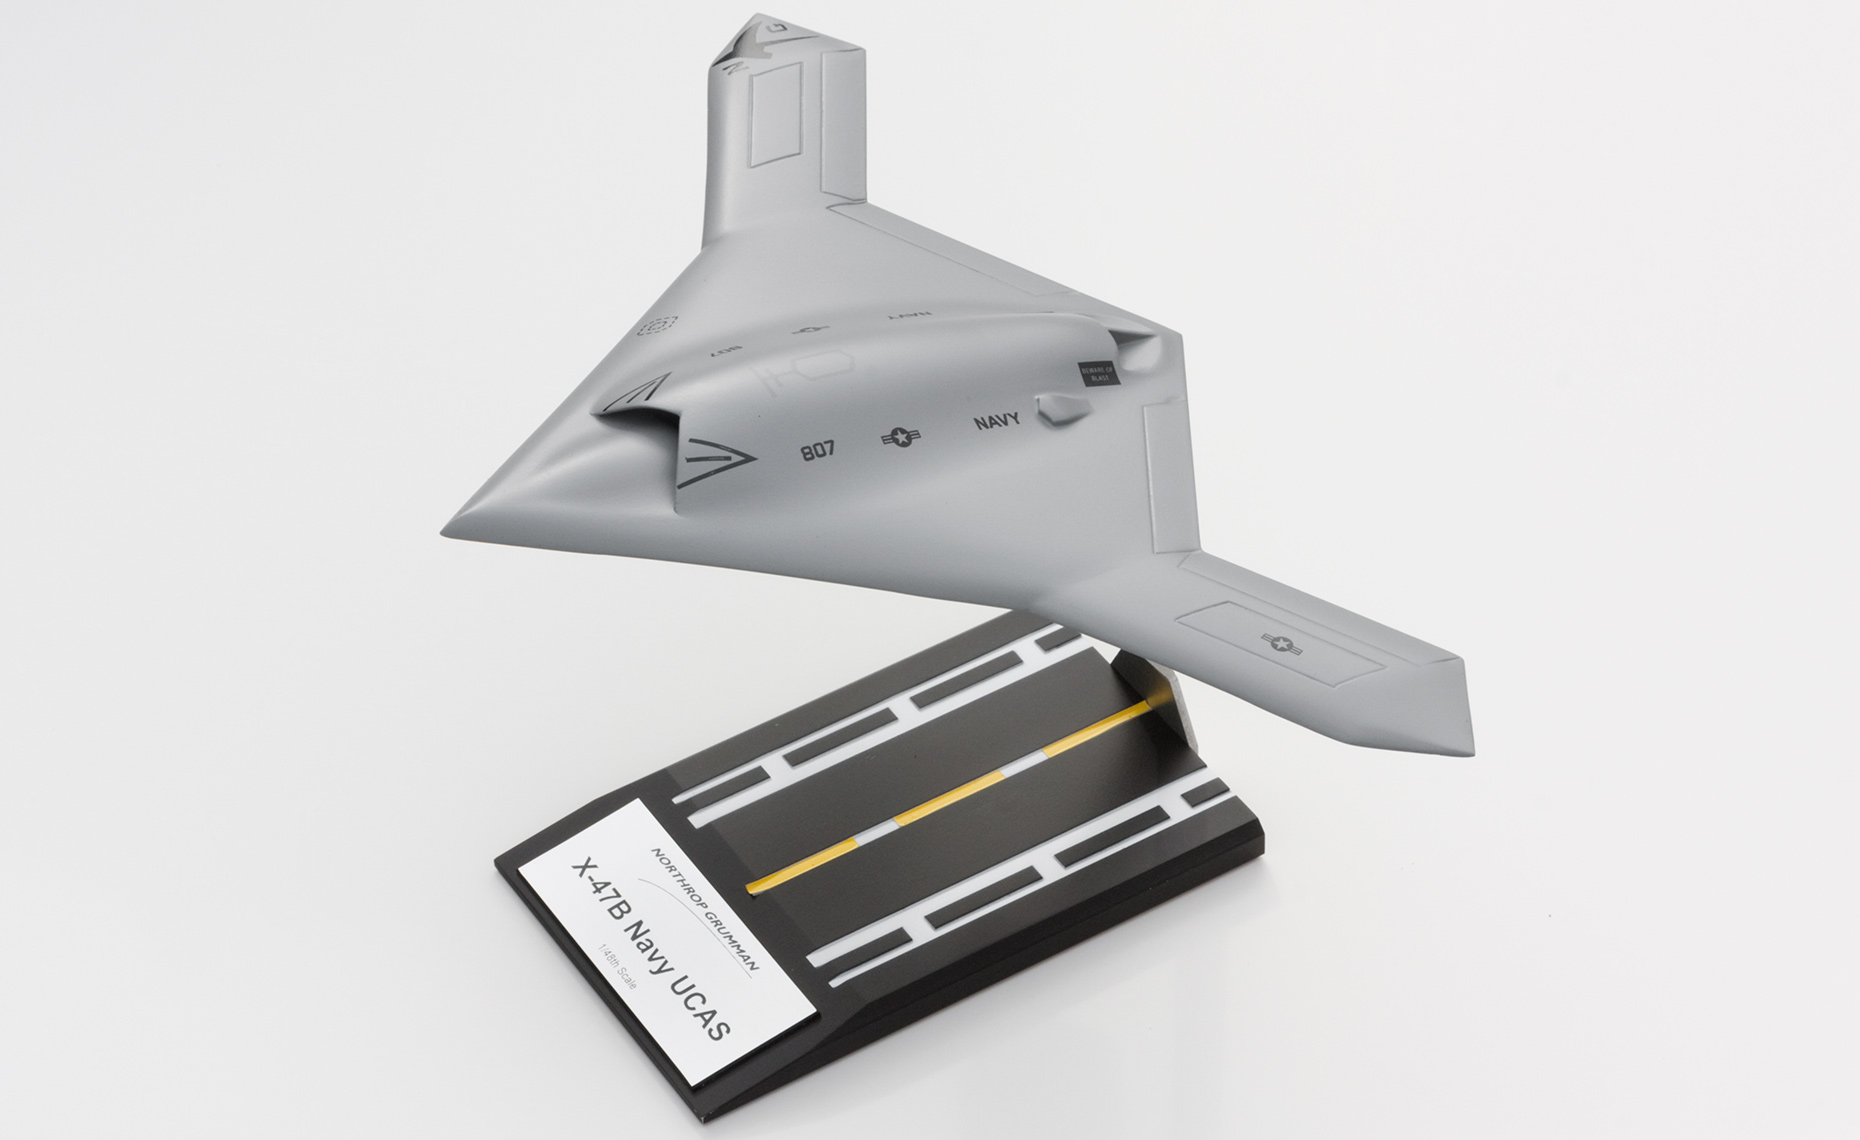 Northrop Grumman X-47B model by Dimensional Technologies